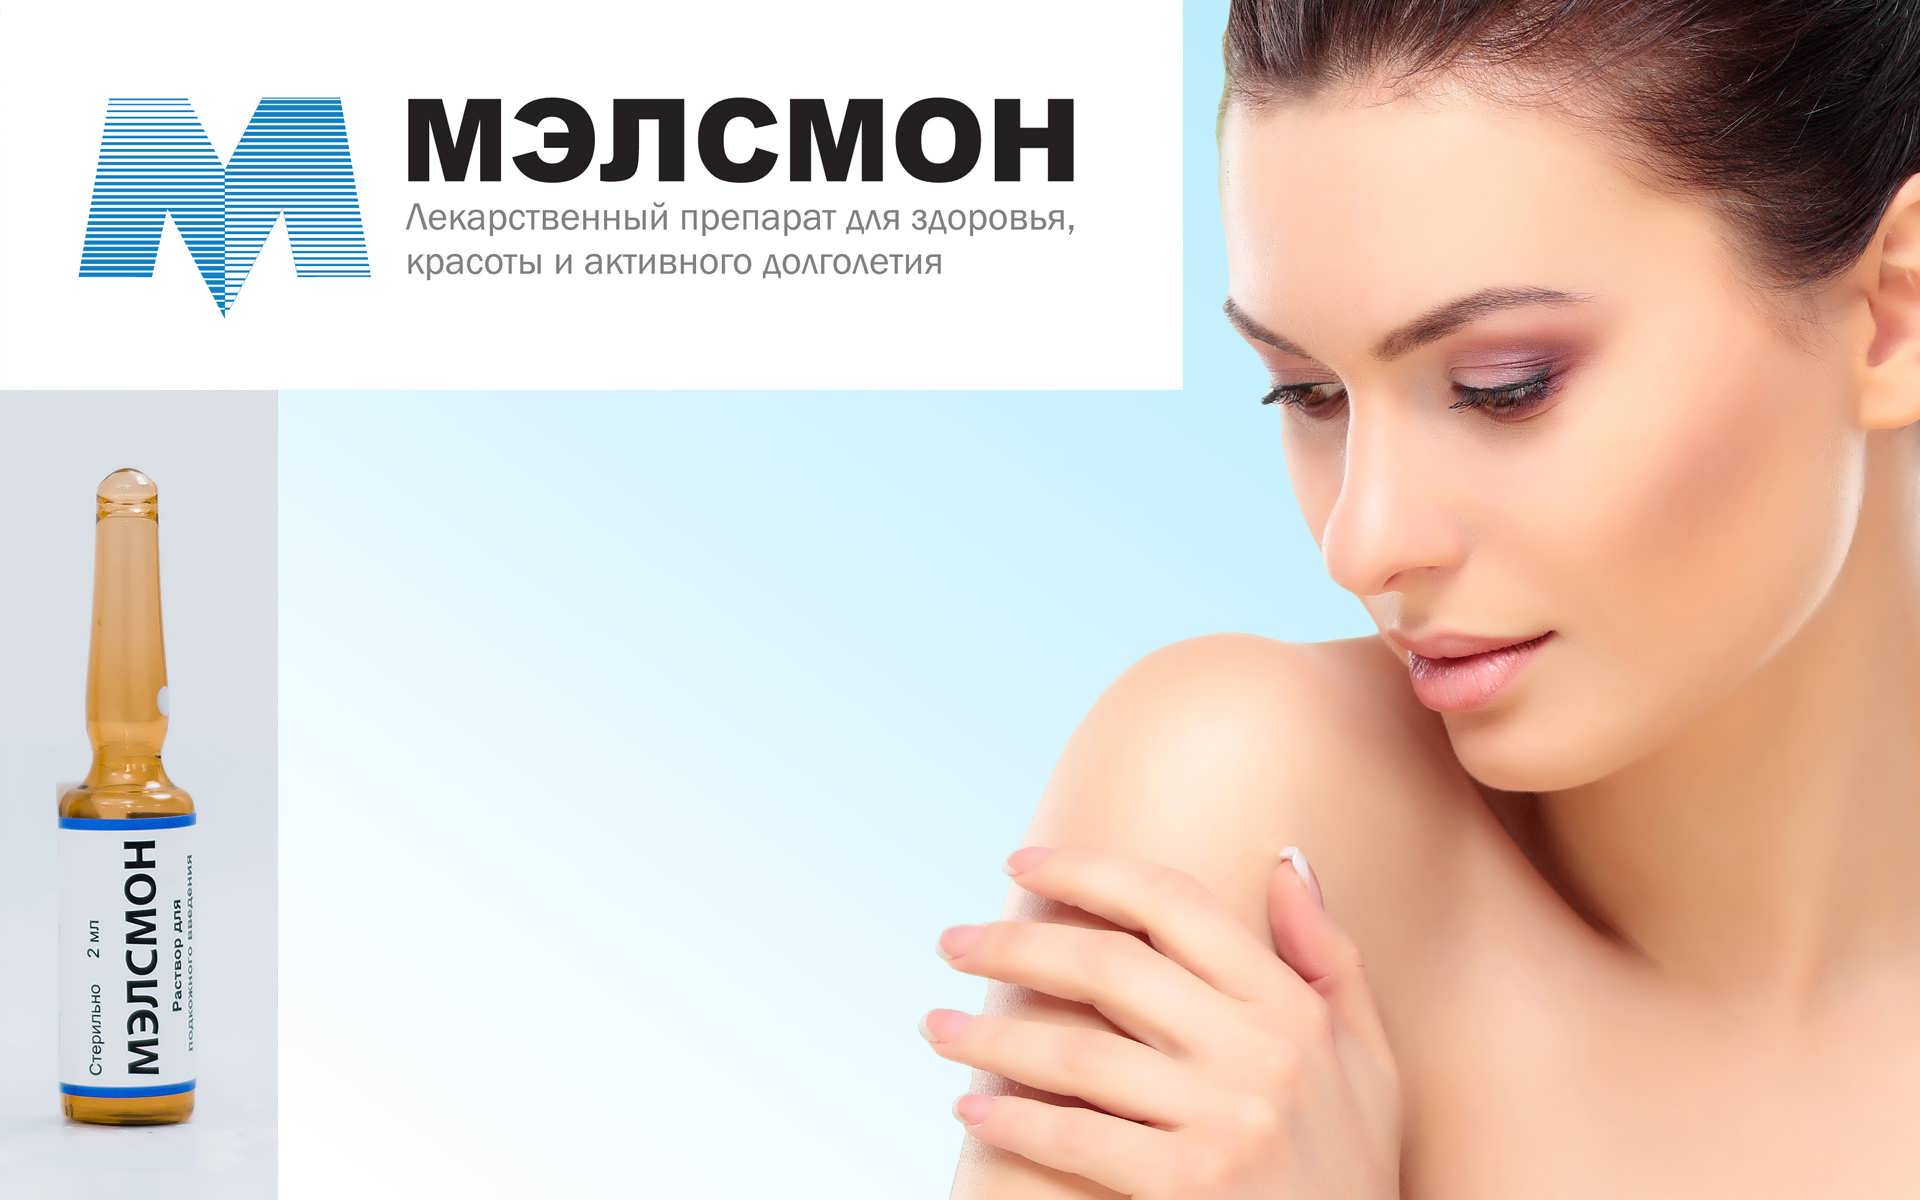 Препарат мэлсмон (melsmon) в косметологии, гинекологии и не только – стоимость препарата и отзывы в москве